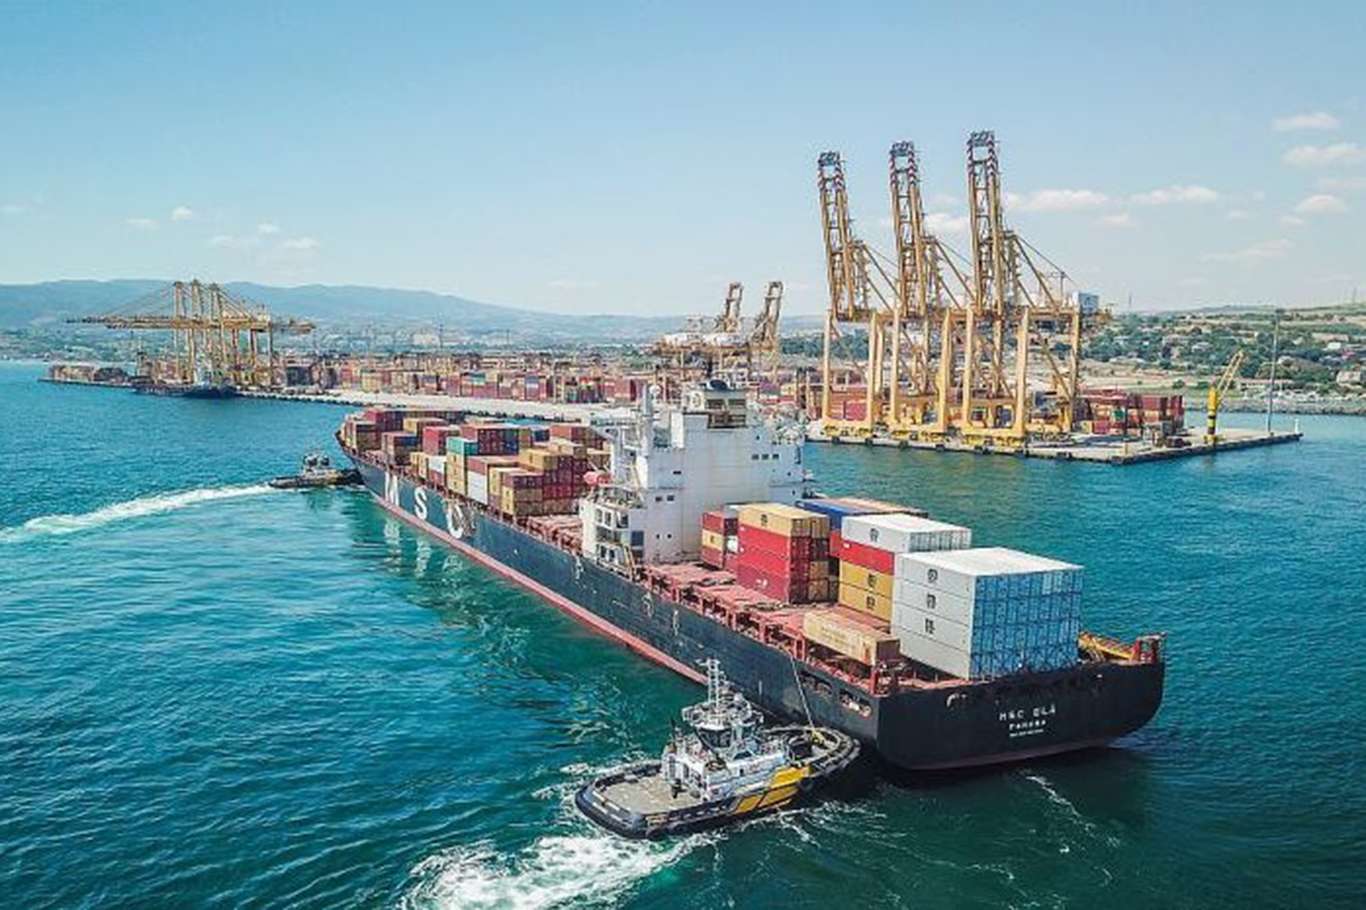 Türkiye's exports reach $254.17 billion in 2022